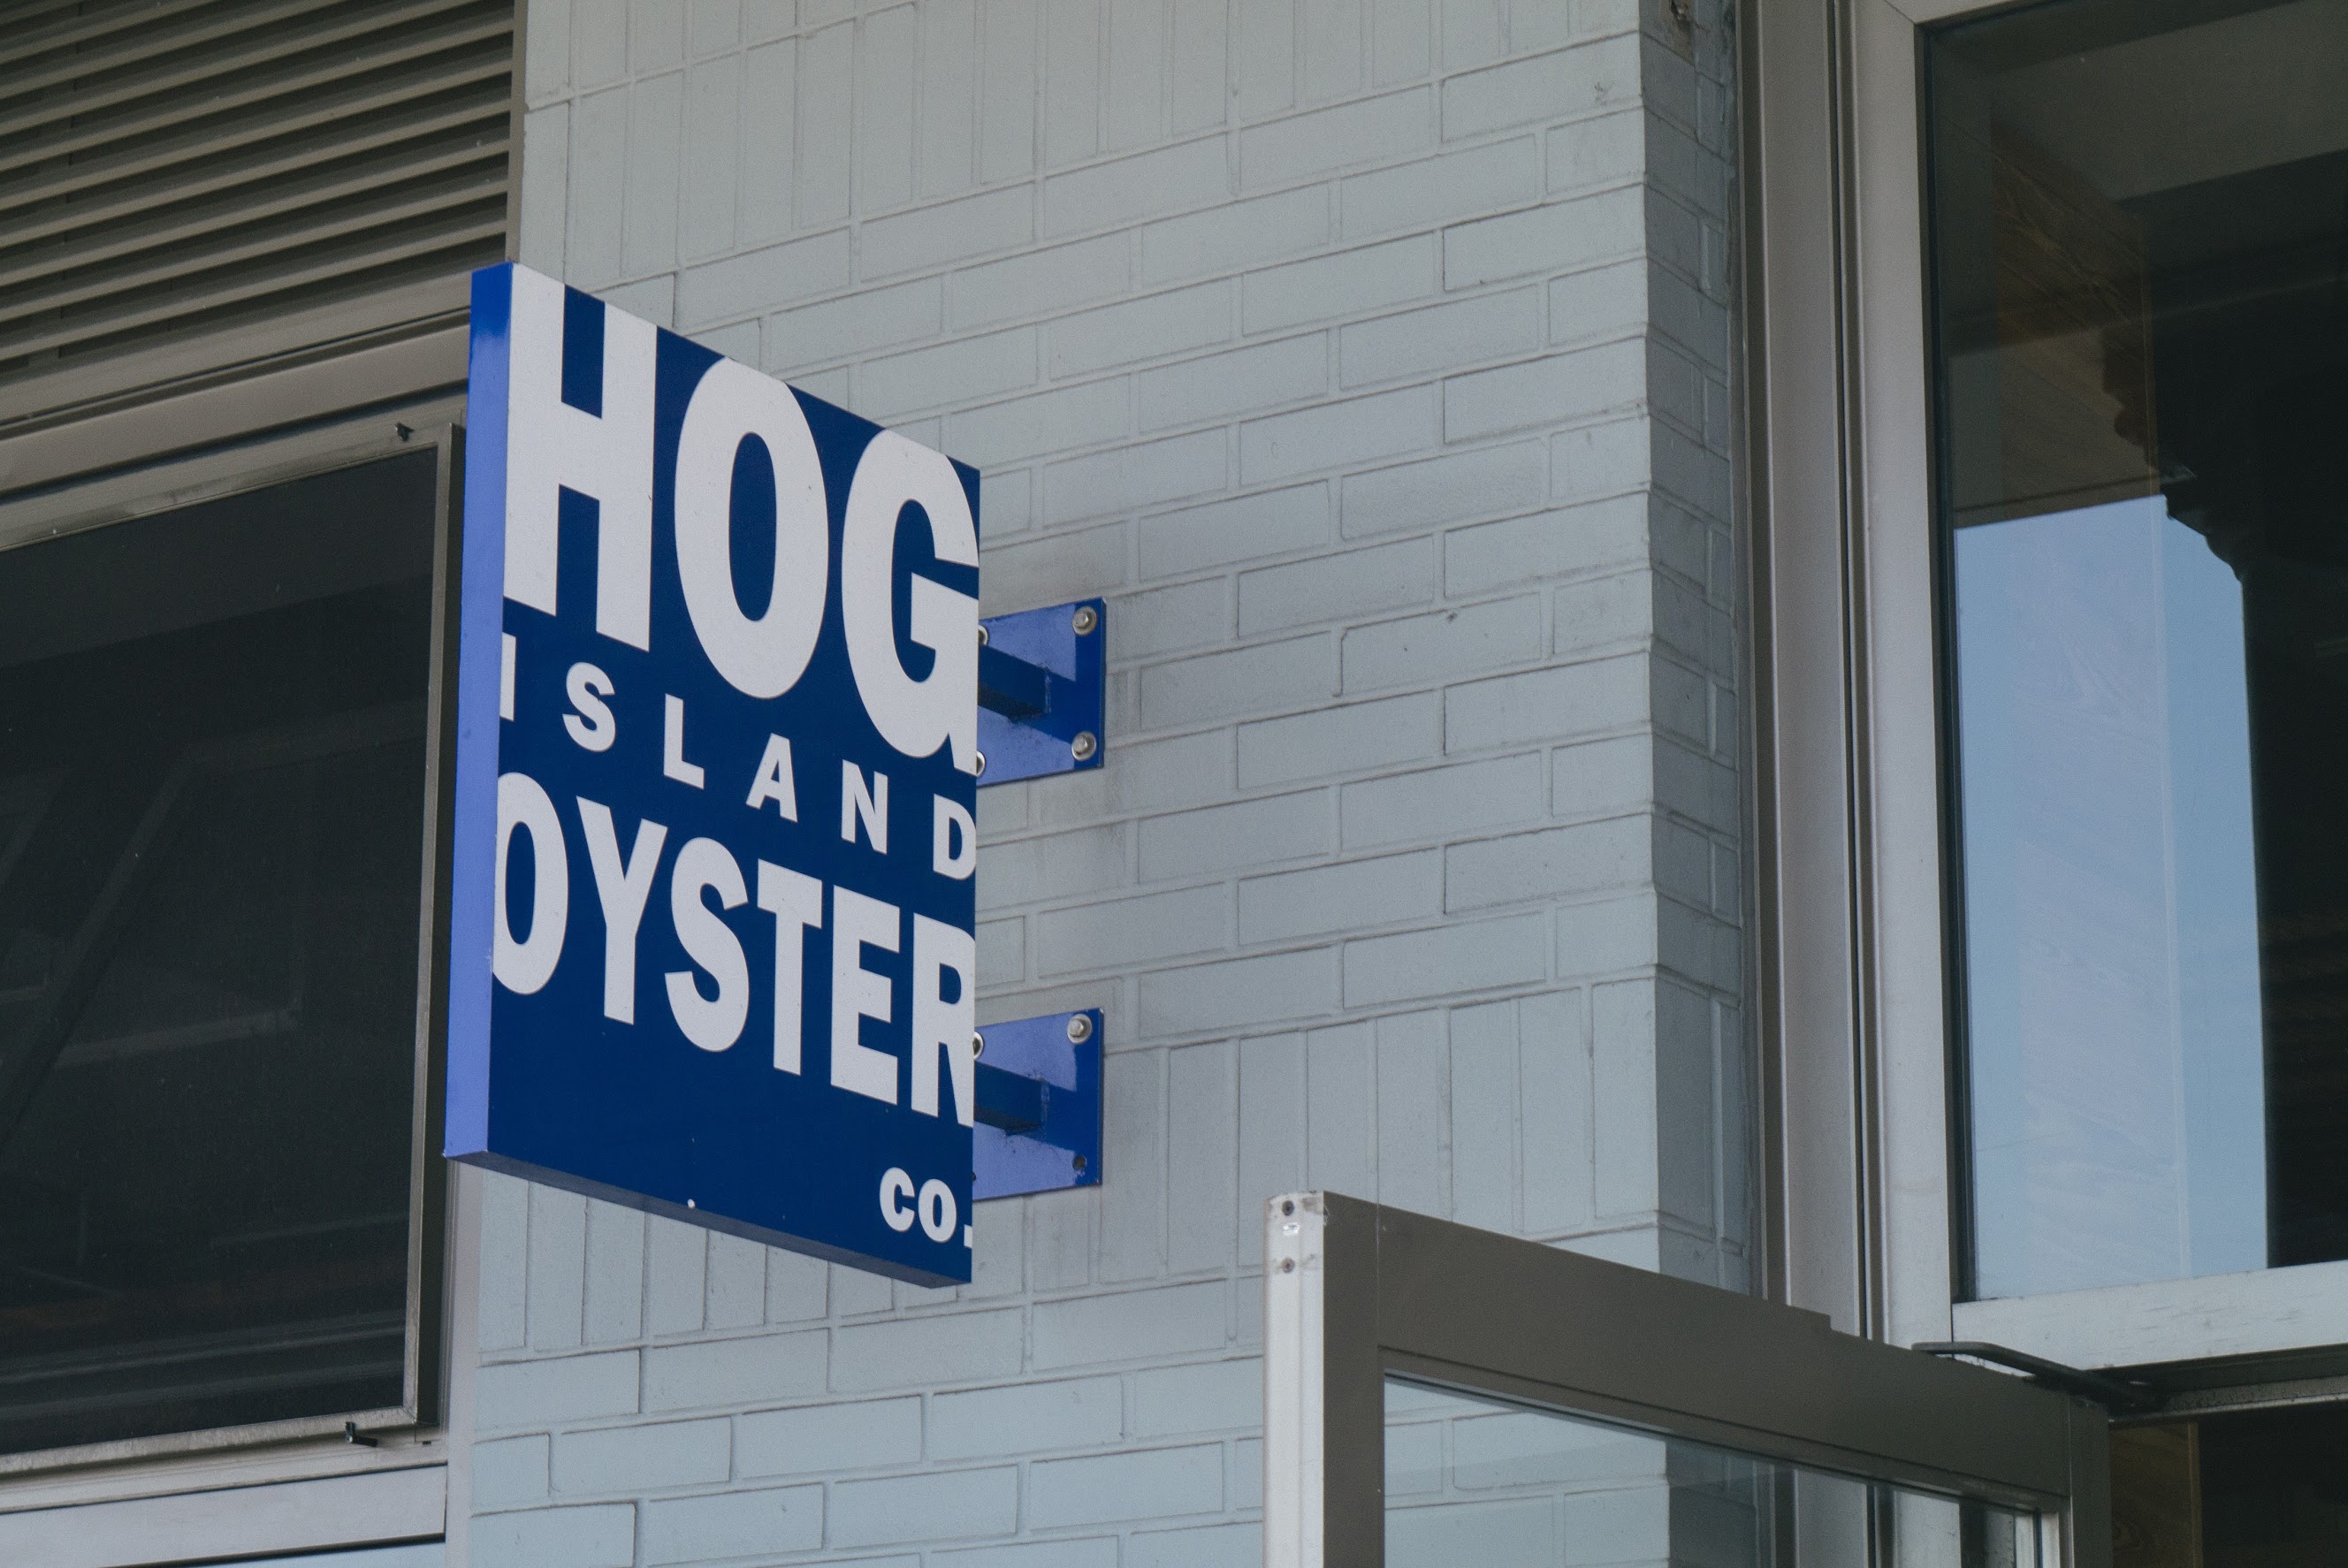 Hog Island Oyster Co.